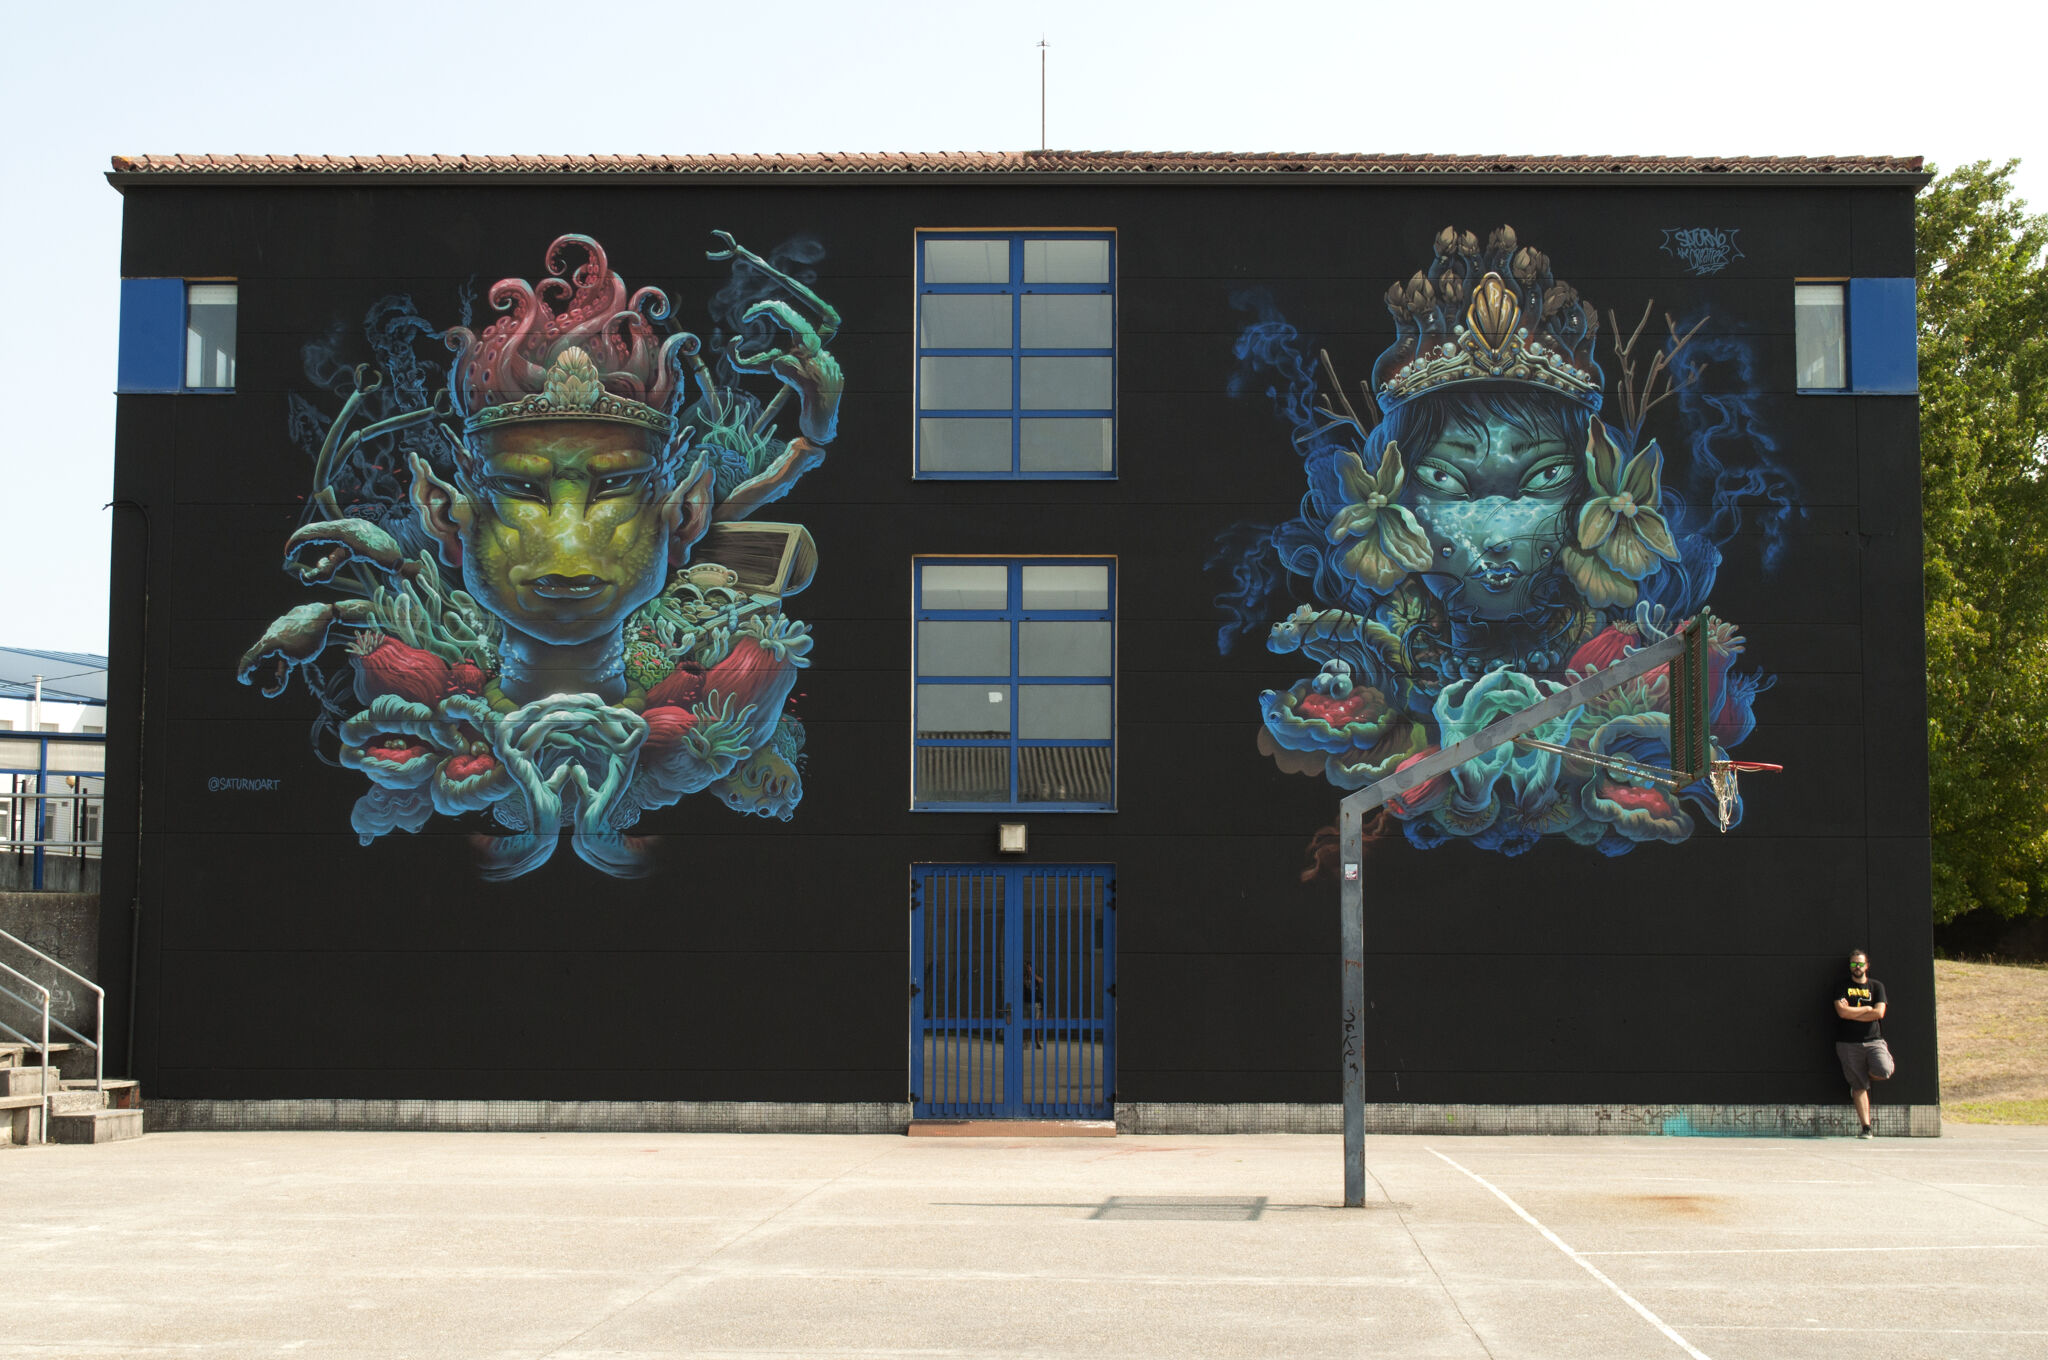 Saturno&mdash;Wall by SATURNO for DESORDES CREATIVAS 2017 in Ordes (Galicia - Spain)